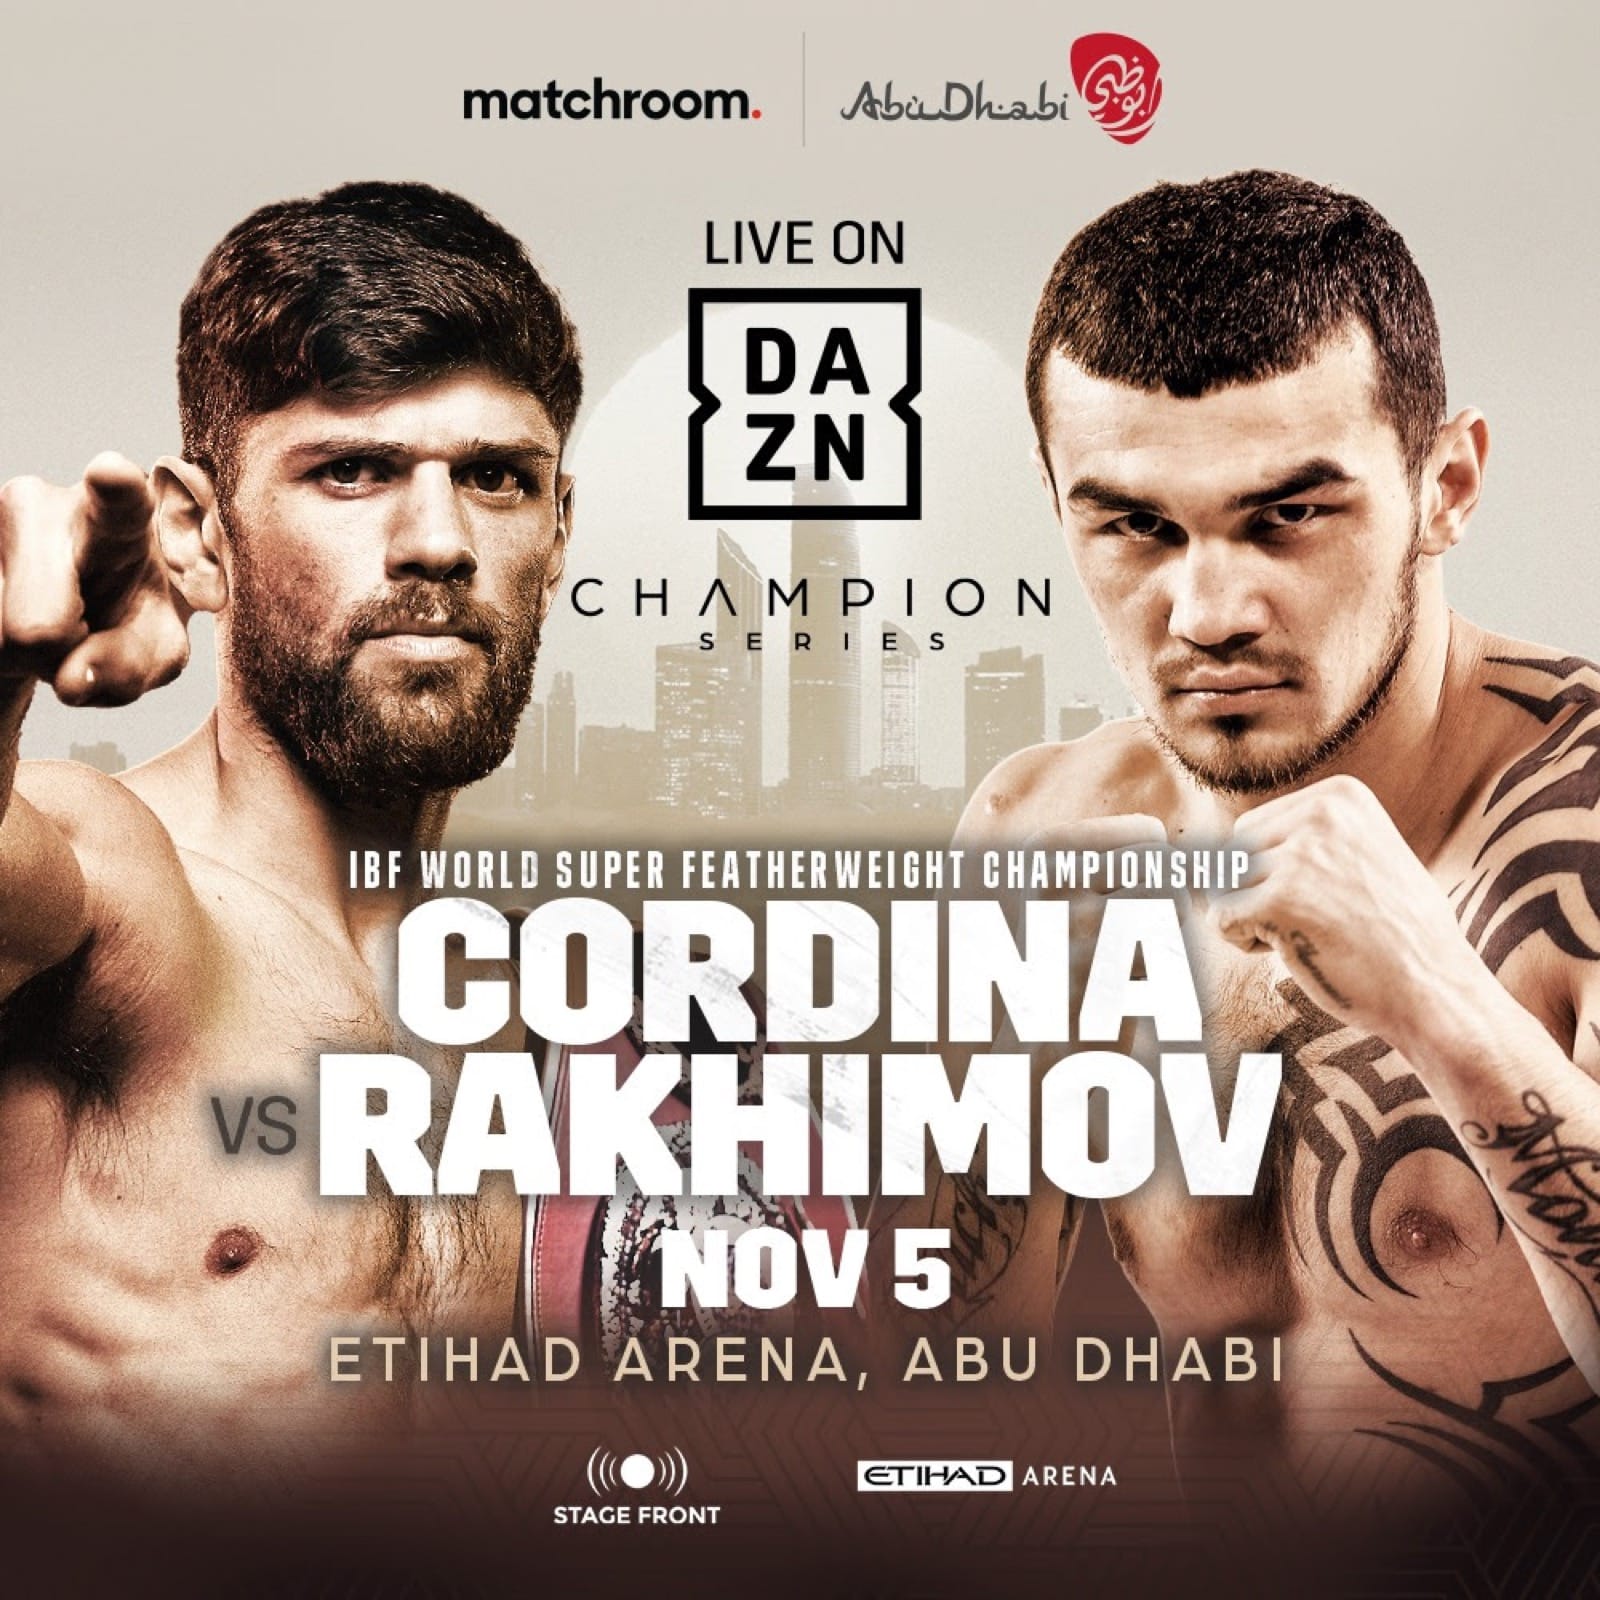 Cordina vs Rakhimov - DAZN - Nov. 5 - 2 pm ET